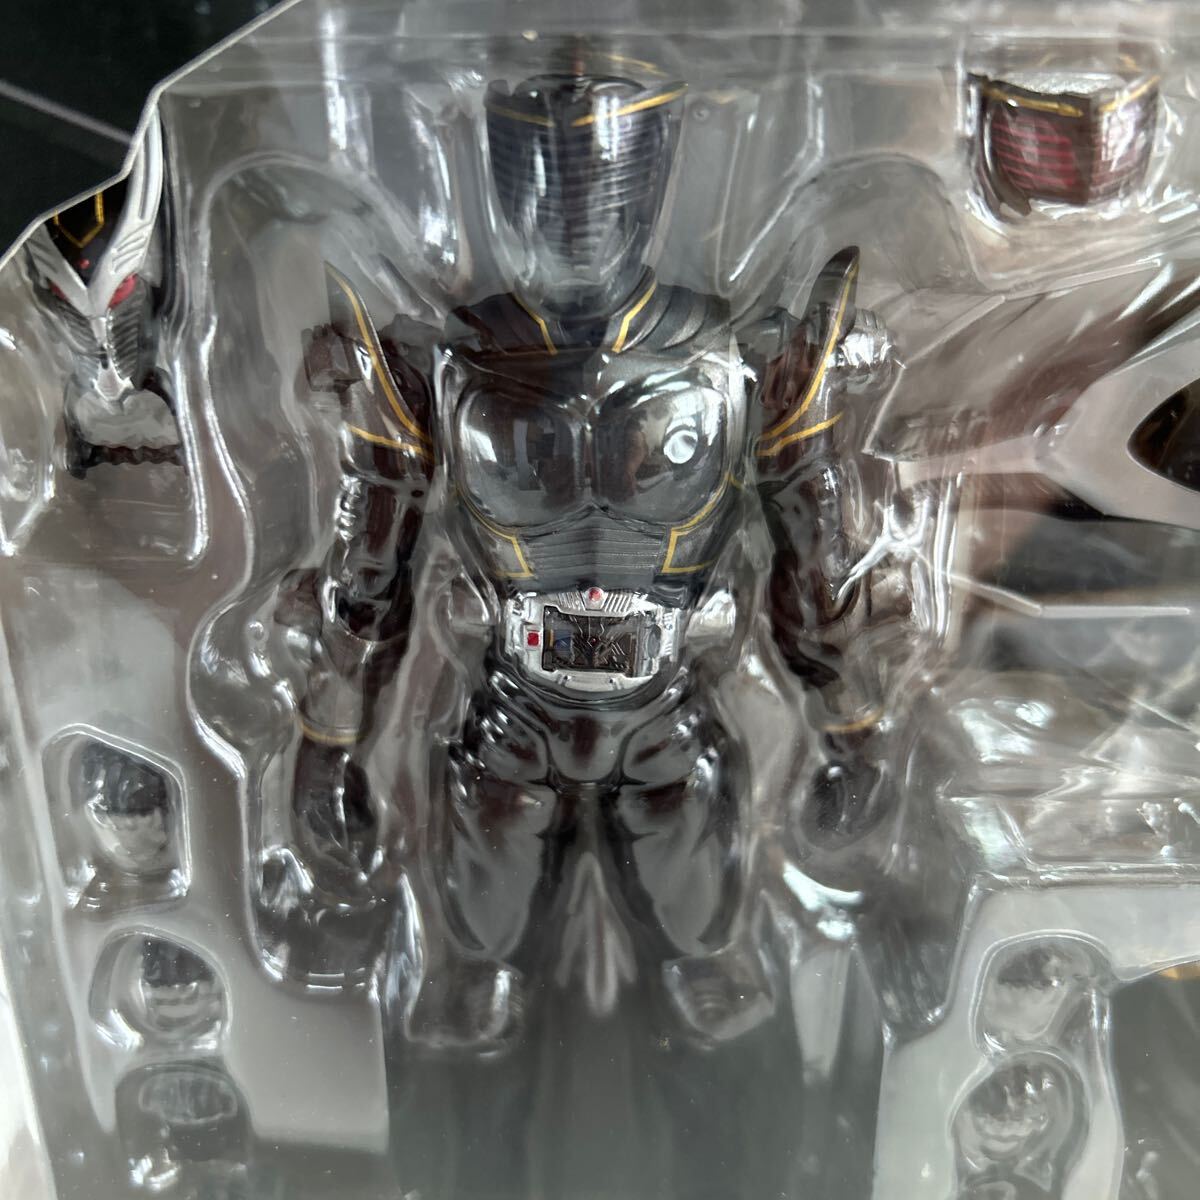  Bandai душа web магазин ограничение S.H.Figuarts [ Kamen Rider Dragon Knight ] Kamen Rider ryuuga& drag b Rucker нераспечатанный перевозка коробка есть 